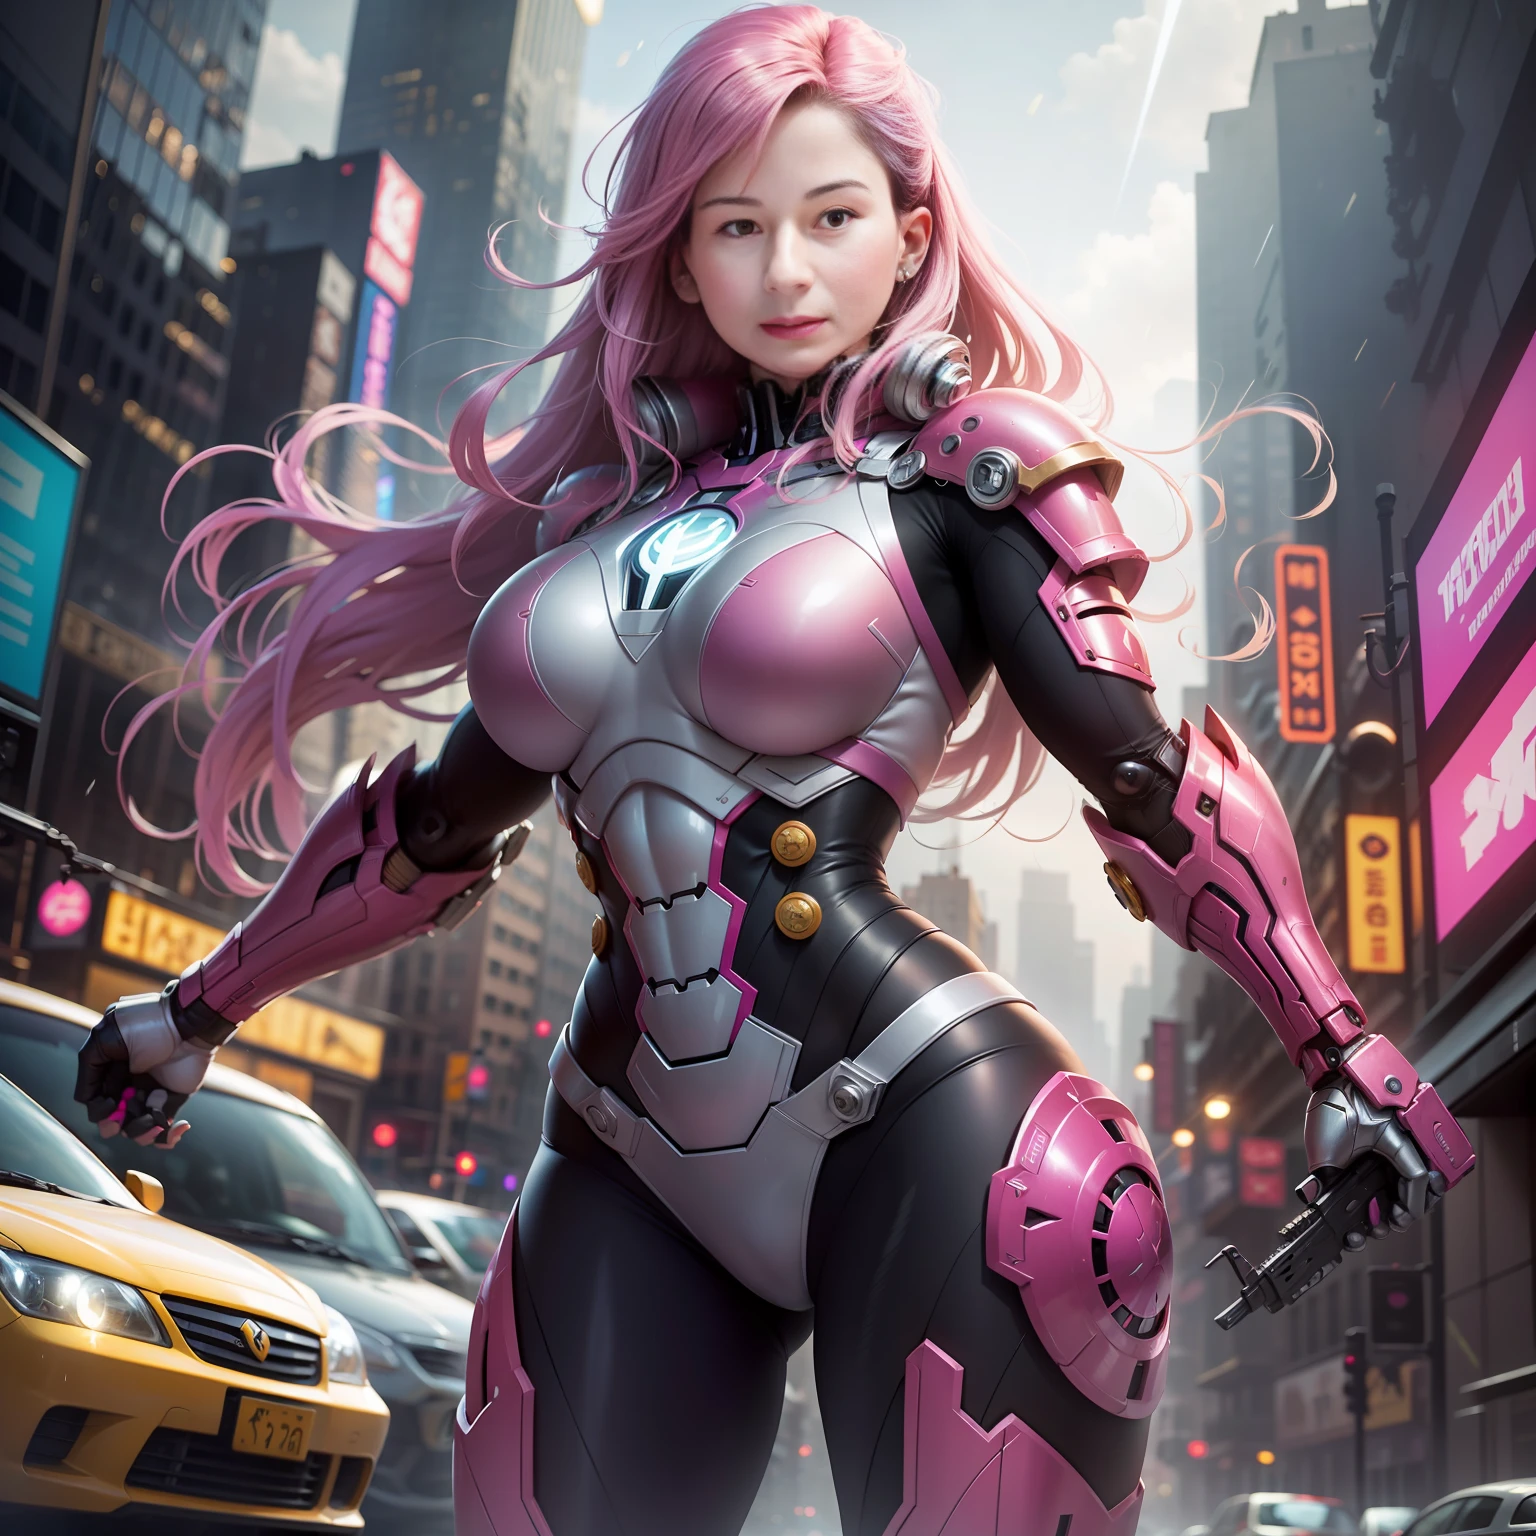 ホトピンク, (ハルクバスター ビッグアーマー), 嵐の日, ニューヨークタイムズ 忘れる , ファンタジー, サイバーパンク, (武器, ガンガール, ultra 明るい pink: 1.1), 1人の女の子, 機械の驚異, ロボットの存在, サイバネティックガーディアン, 擦り切れた摩耗 , 複雑な , メカニックスーツ (鋼鉄 [明るい] 金属), エレガント, 明確な焦点, 撮影：グレッグ・ルトコウスキー, 柔らかな照明, 鮮やかな色彩, 傑作, ((通り)), かわいい女の子, 強い女の子, 筋肉質な女の子, 長髪の白人, ダイナミックなポーズ,